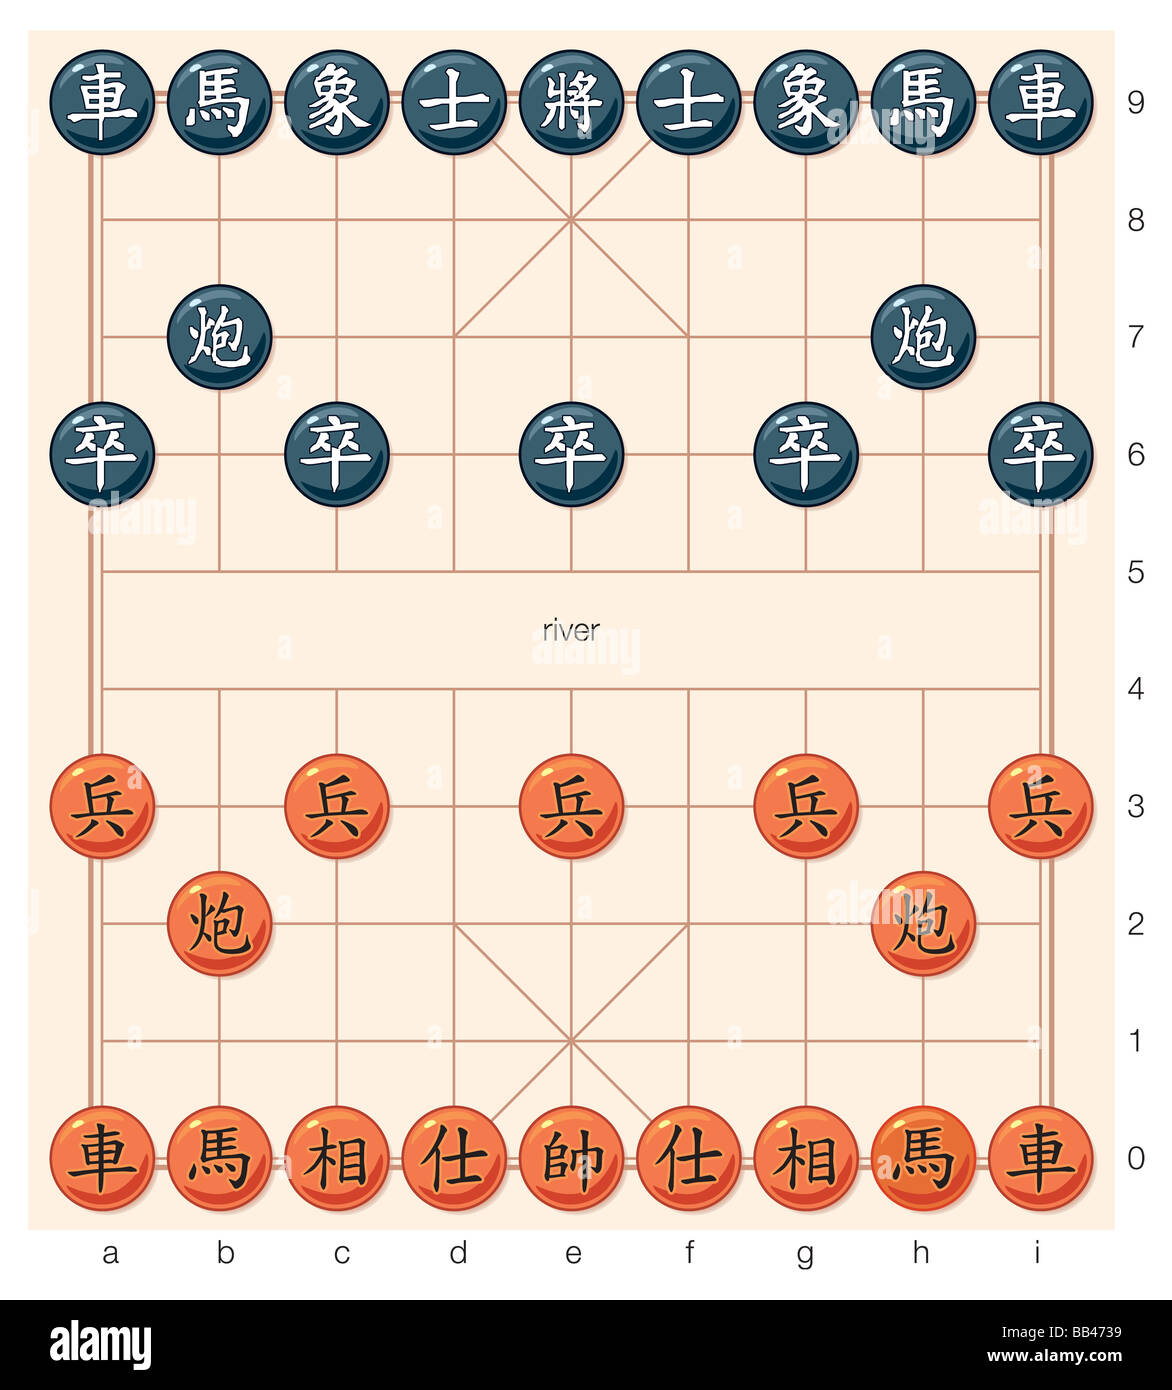 Die Position der chinesischen Schachfiguren zu Beginn eines Spiels. Stockfoto